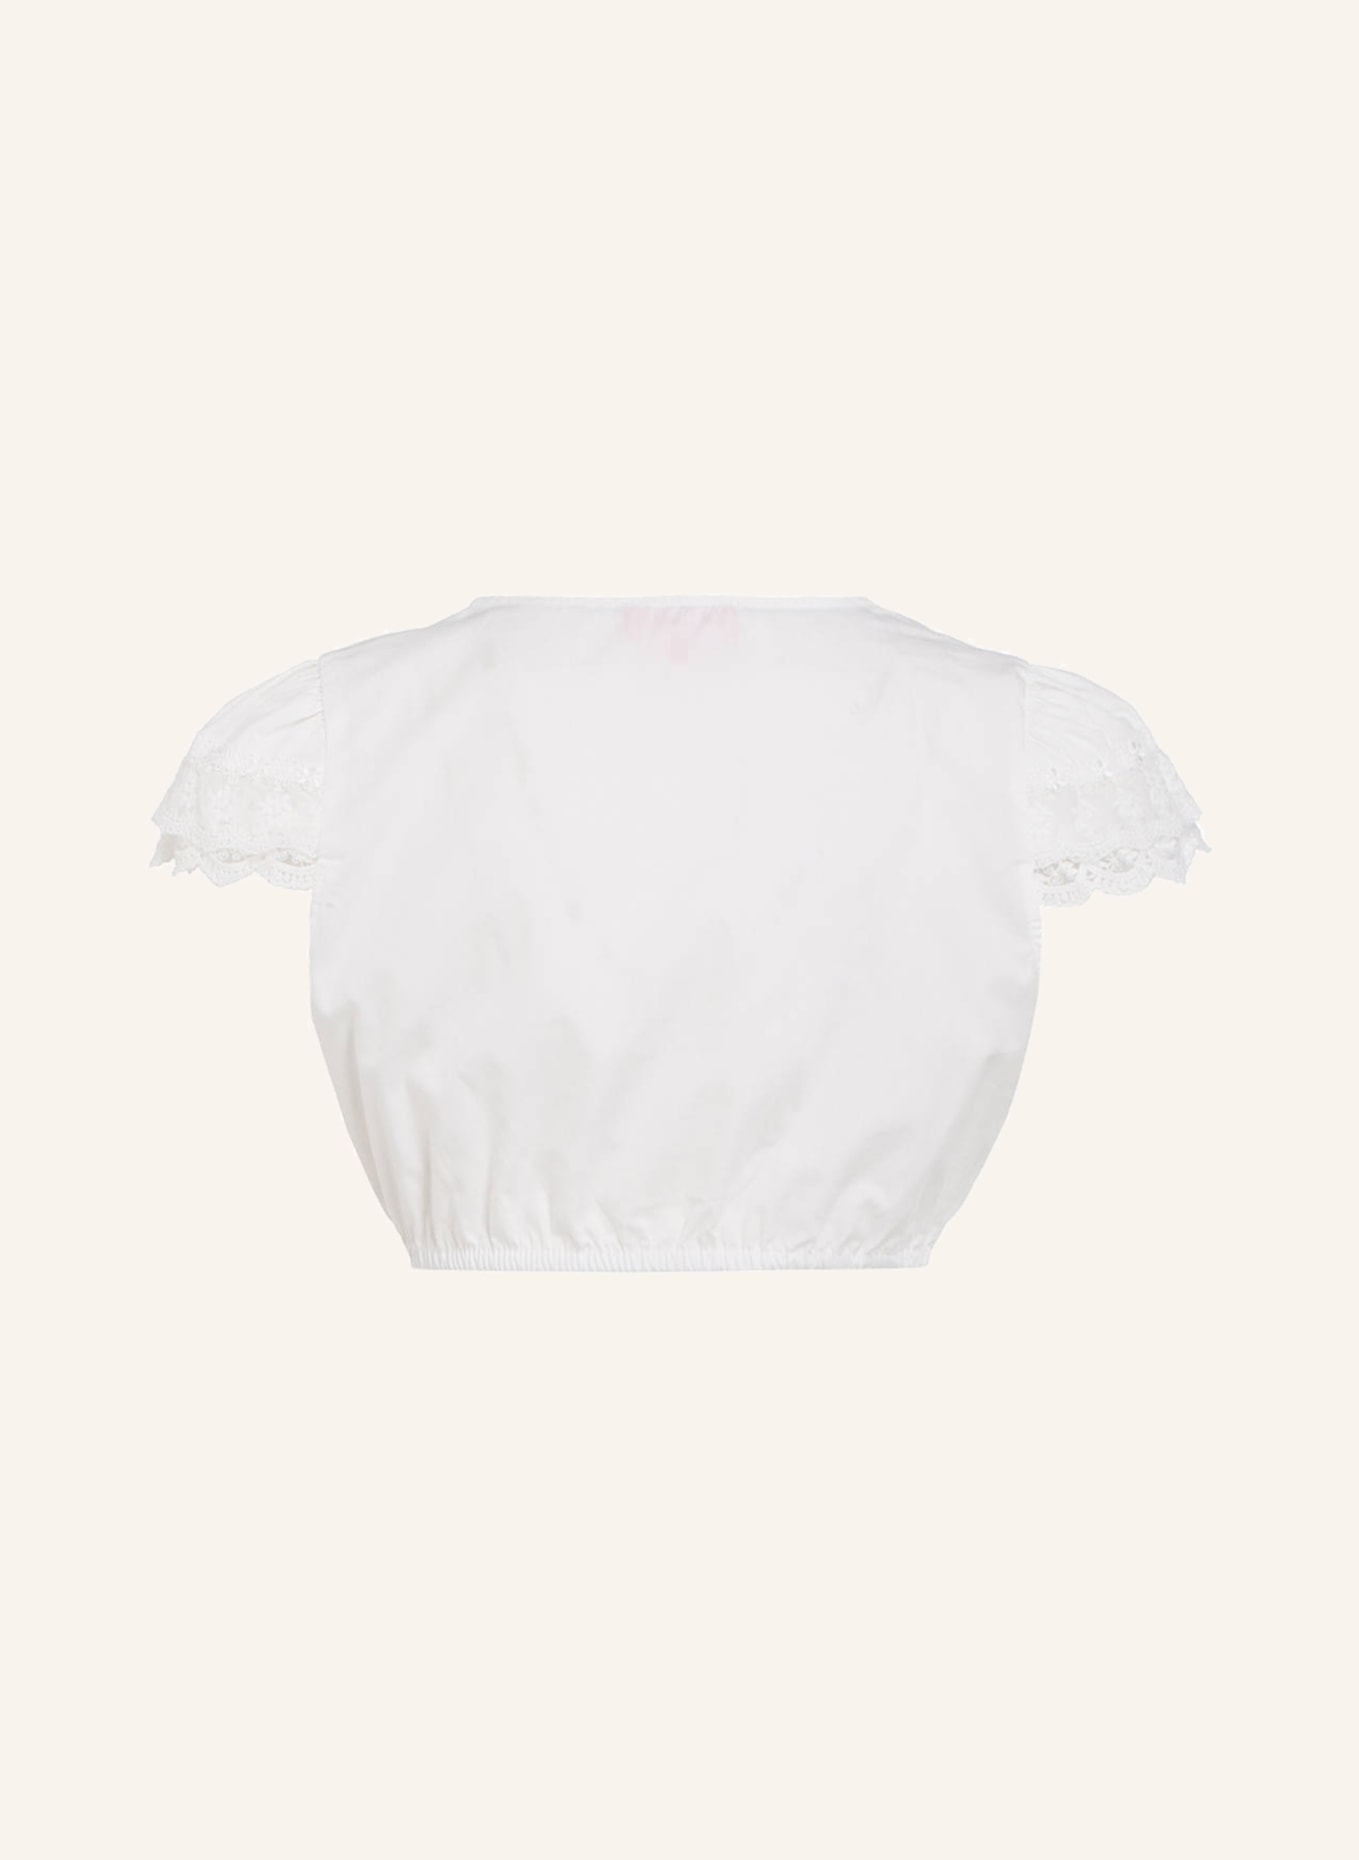 KRÜGER Dirndl blouse JASMIN, Color: WHITE (Image 2)